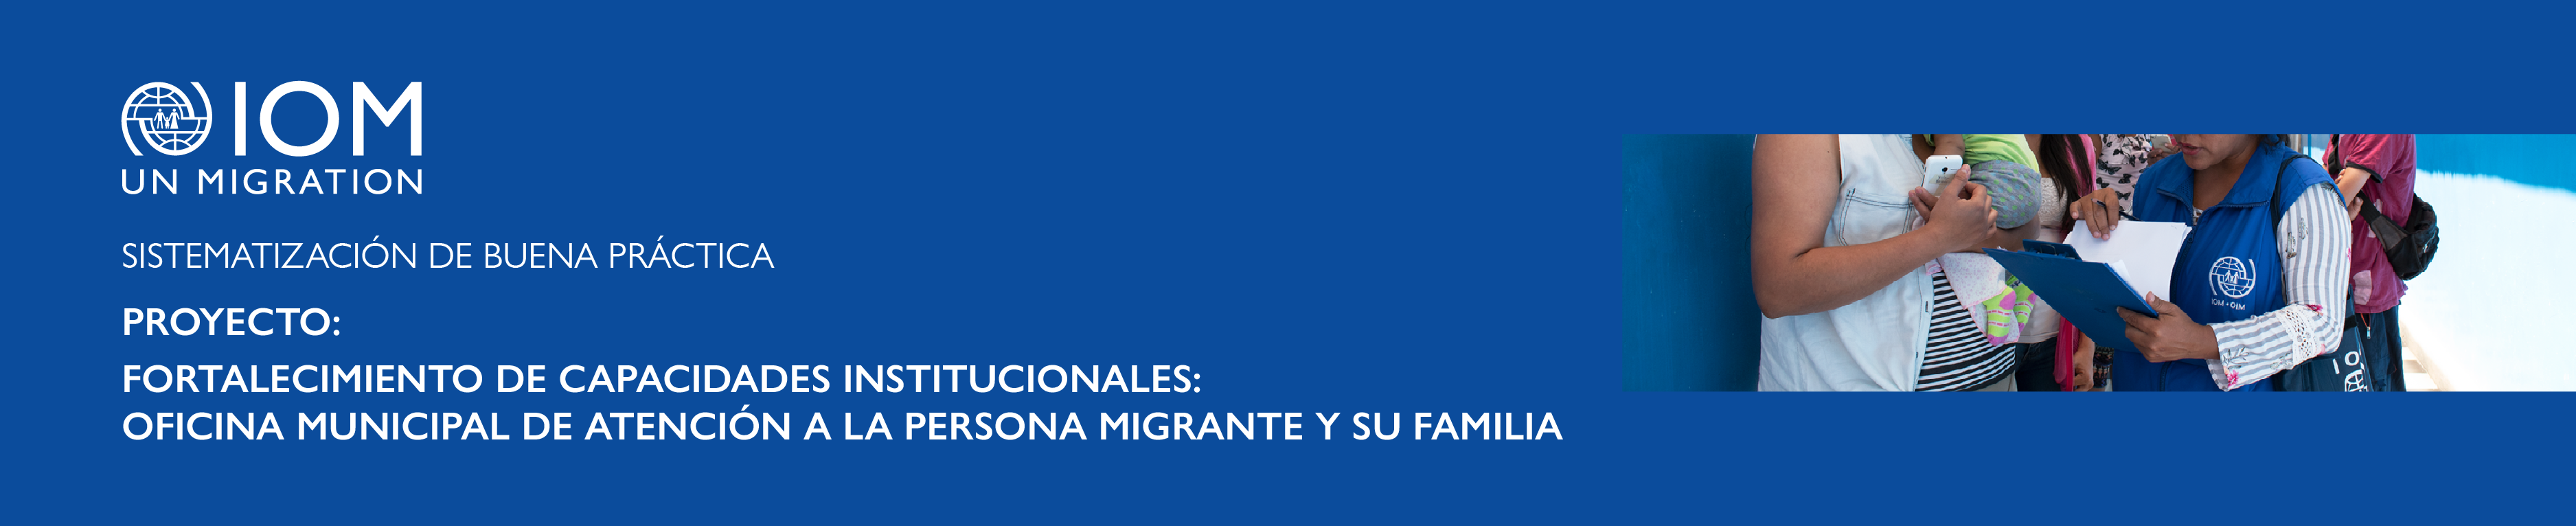 Fortalecimiento de capacidades institucionales: Oficina de atención a la persona migrante